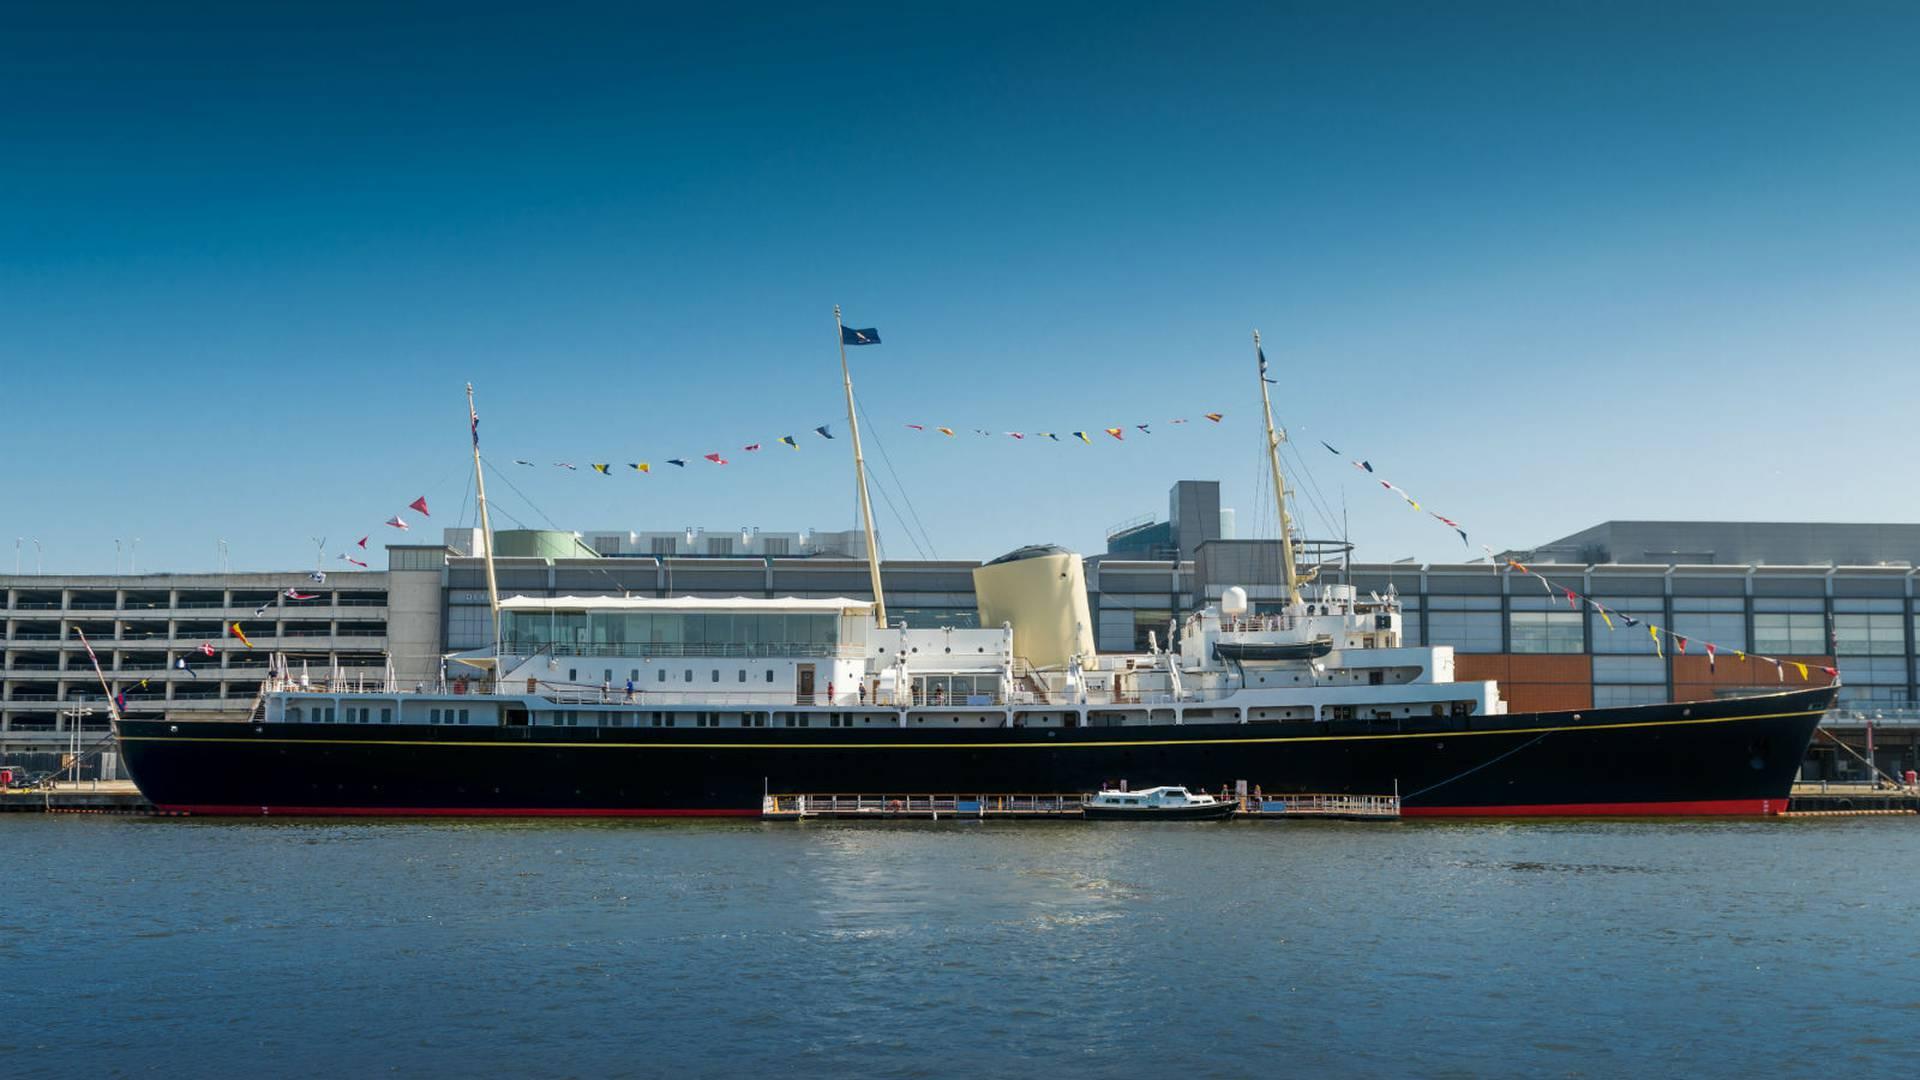 The Royal Yacht Britannia photo